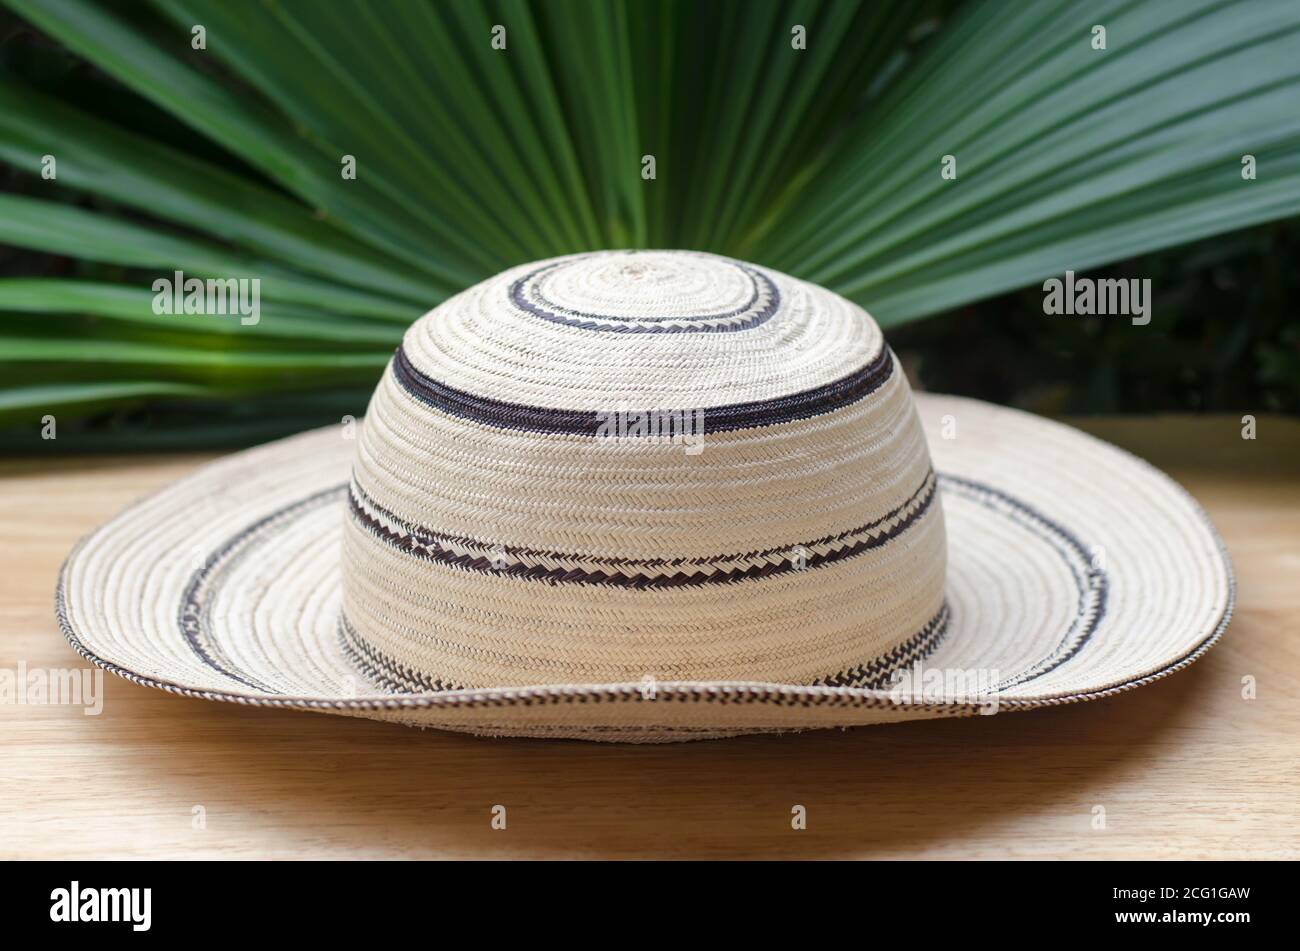 Panamaischer Hut, ein traditioneller Hut aus Panama Stockfoto